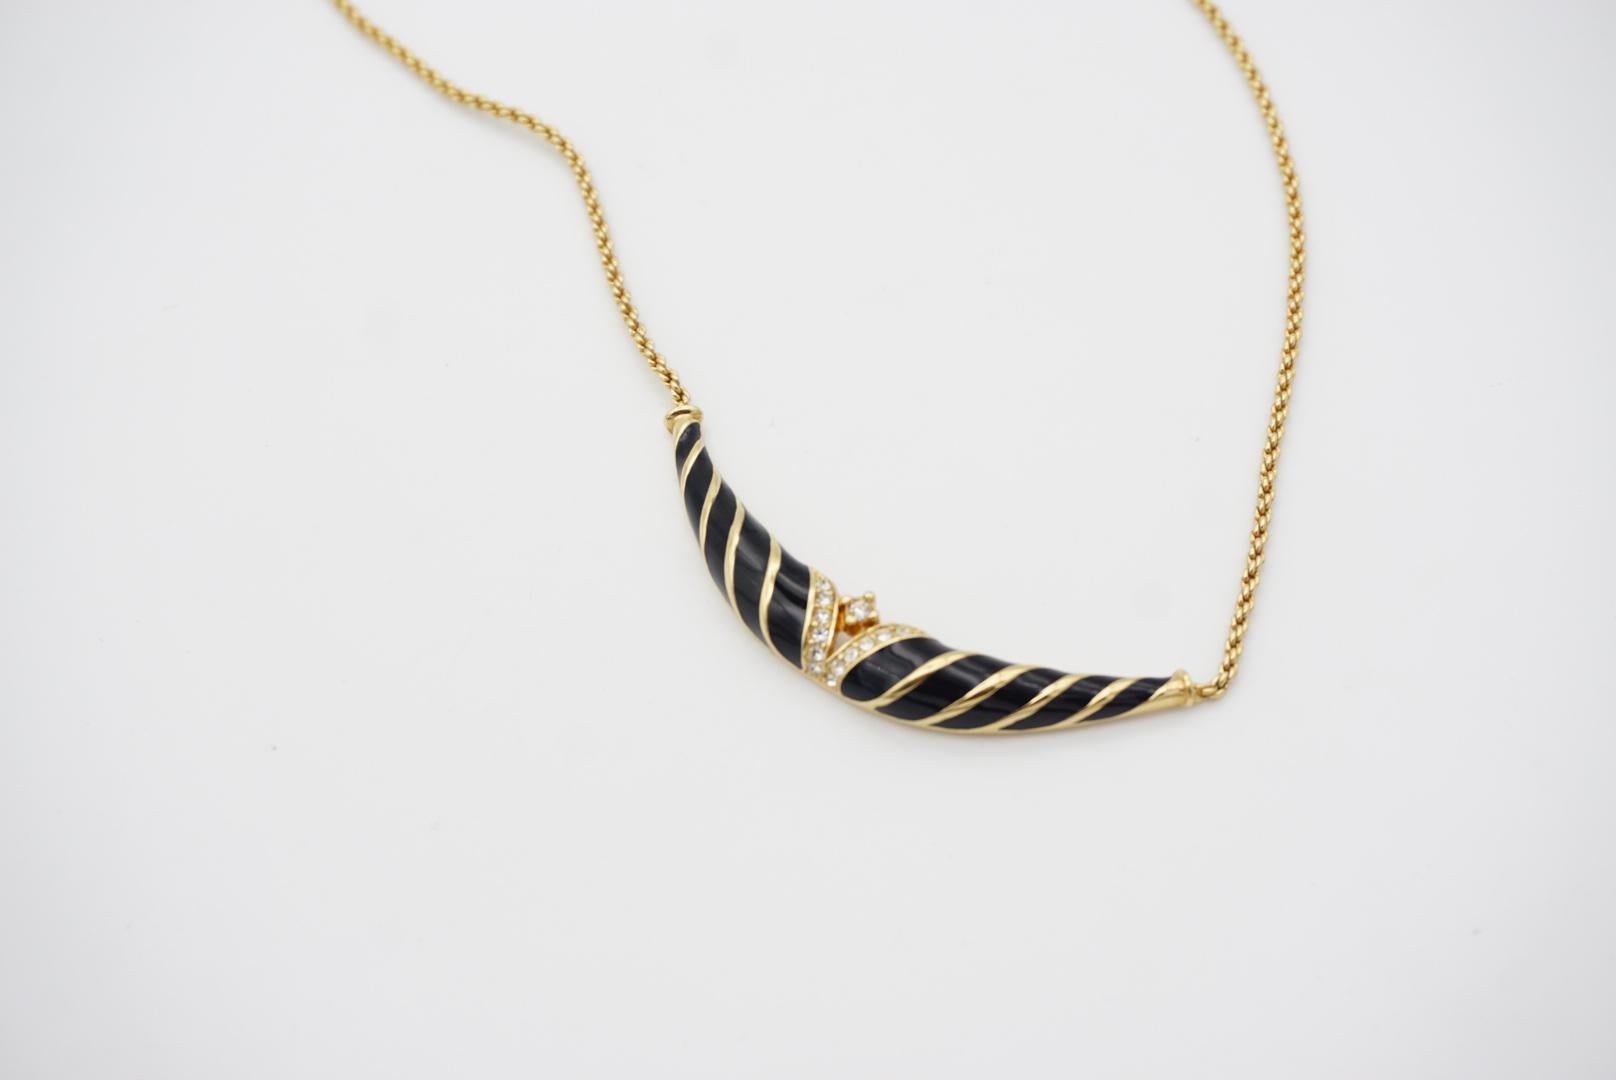 Christian Dior Vintage 1970s Black Enamel Twist Long Bar Crystals Gold Necklace For Sale 4